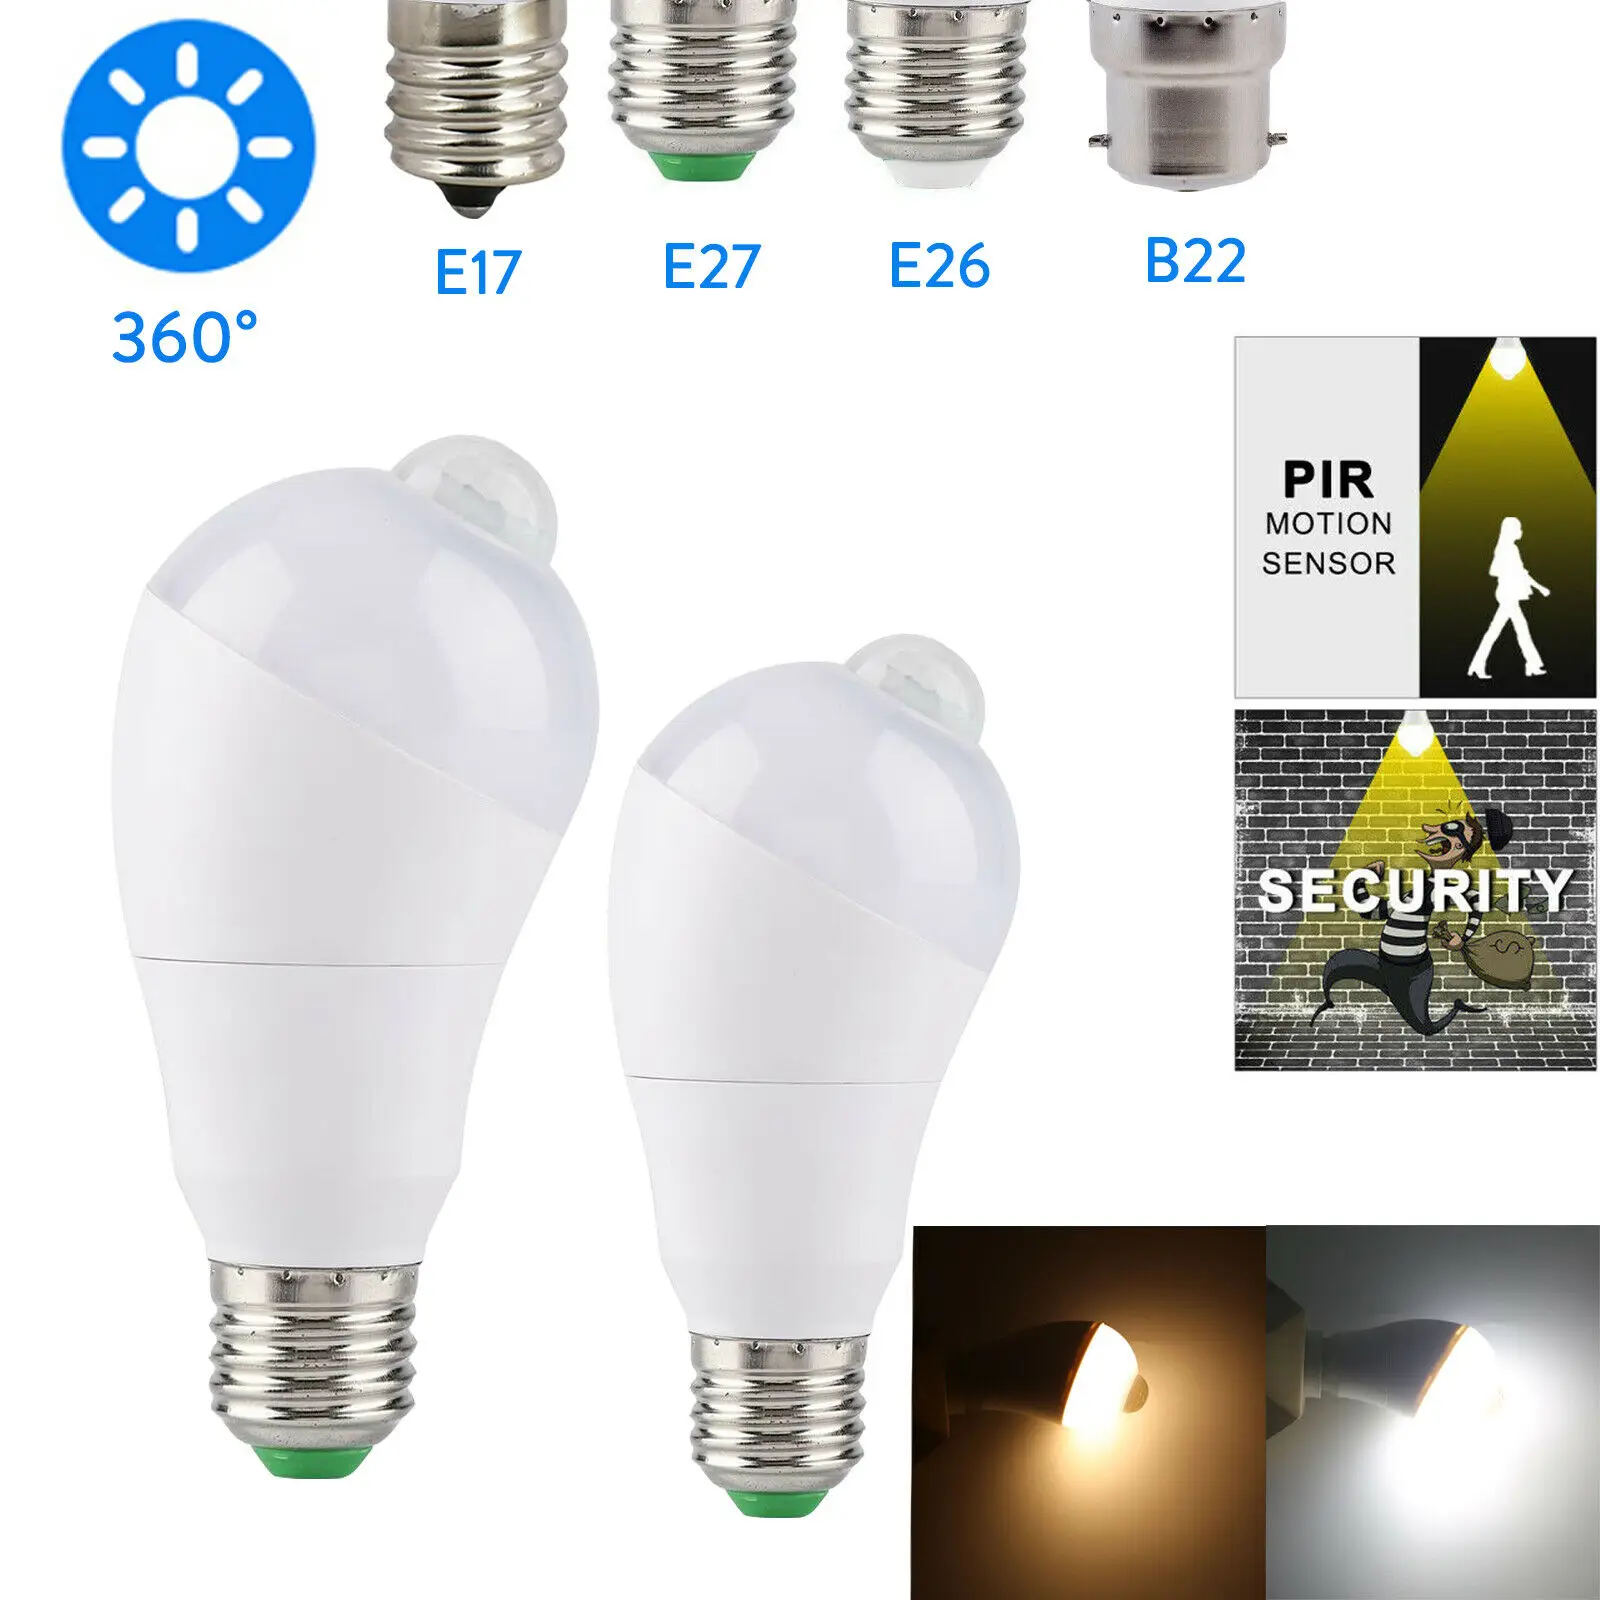 

PIR Rotate LED Bulb 5W 7W Motion Sensor Light Bulb E17 B22 E26 E27 For Corridor Home Light